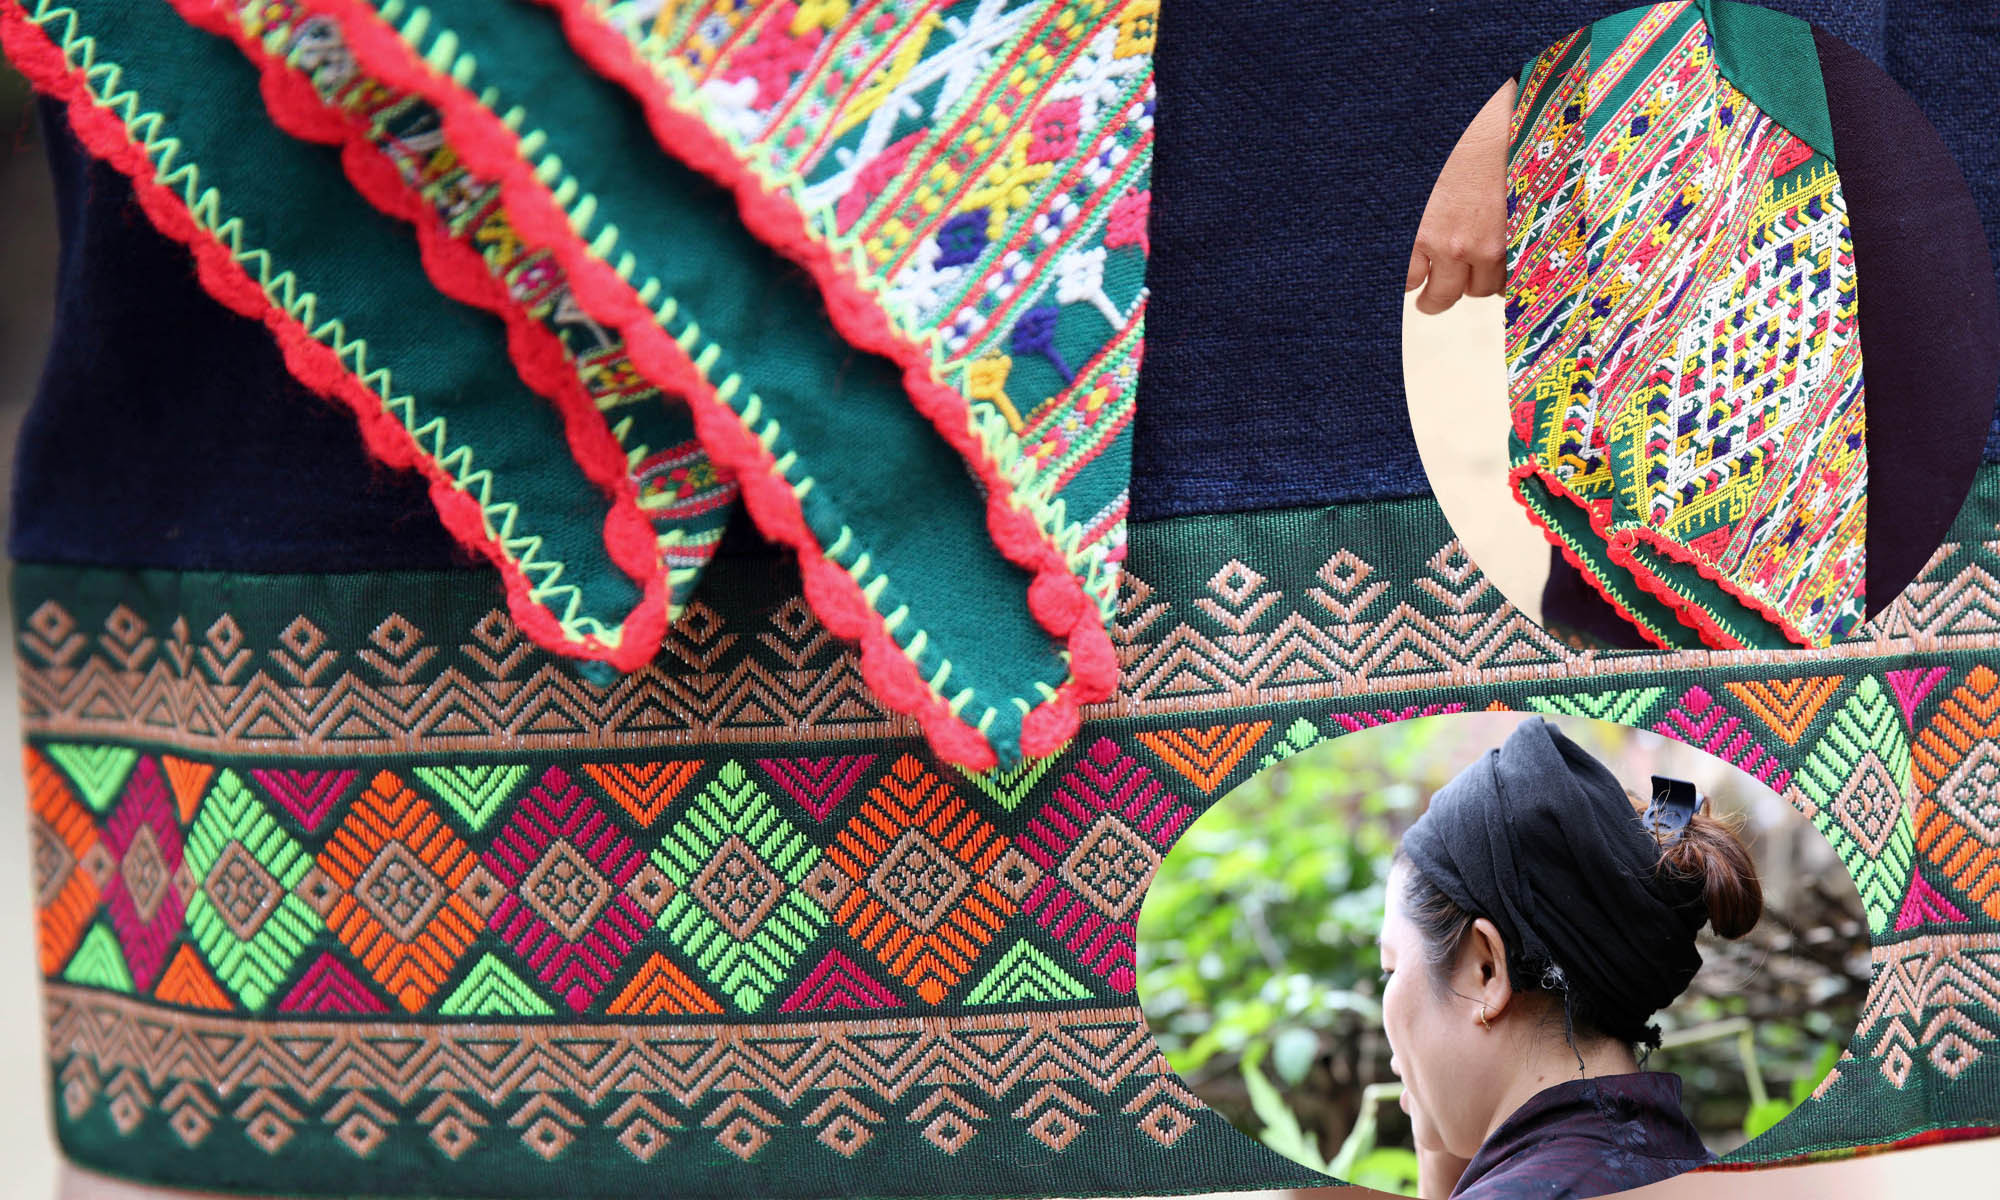 Bấy lâu nay, trang phục của người Ơ đu sử dụng gần với trang phục người Thái và bị ảnh hưởng của văn hóa Thái. Váy, thắt lưng và khăn quấn đầu của người Ơ đu đều được dệt bằng sợi tơ tằm. Tuy nhiên, nếu như chân váy của người phụ nữ Thái thường được thêu với nhiều loại hoa văn phần lớn là các hình mô phỏng về thiên nhiên như hoa lá, động vật, mặt trời, các hình khối với nhiều màu sắc sặc sỡ thì chân váy của người phụ nữ Ơ đu thường thêu các hình khối zíc zắc và nhỏ bản hơn với so với chân váy người phụ nữ Thái.